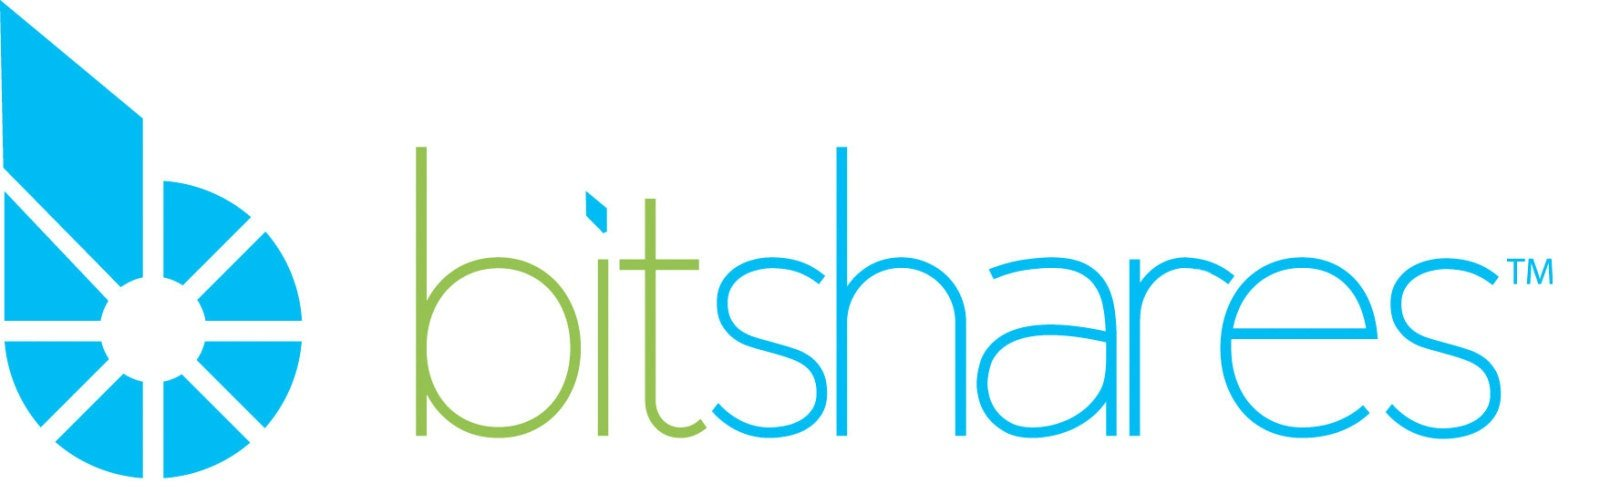 BitShares Logo.png